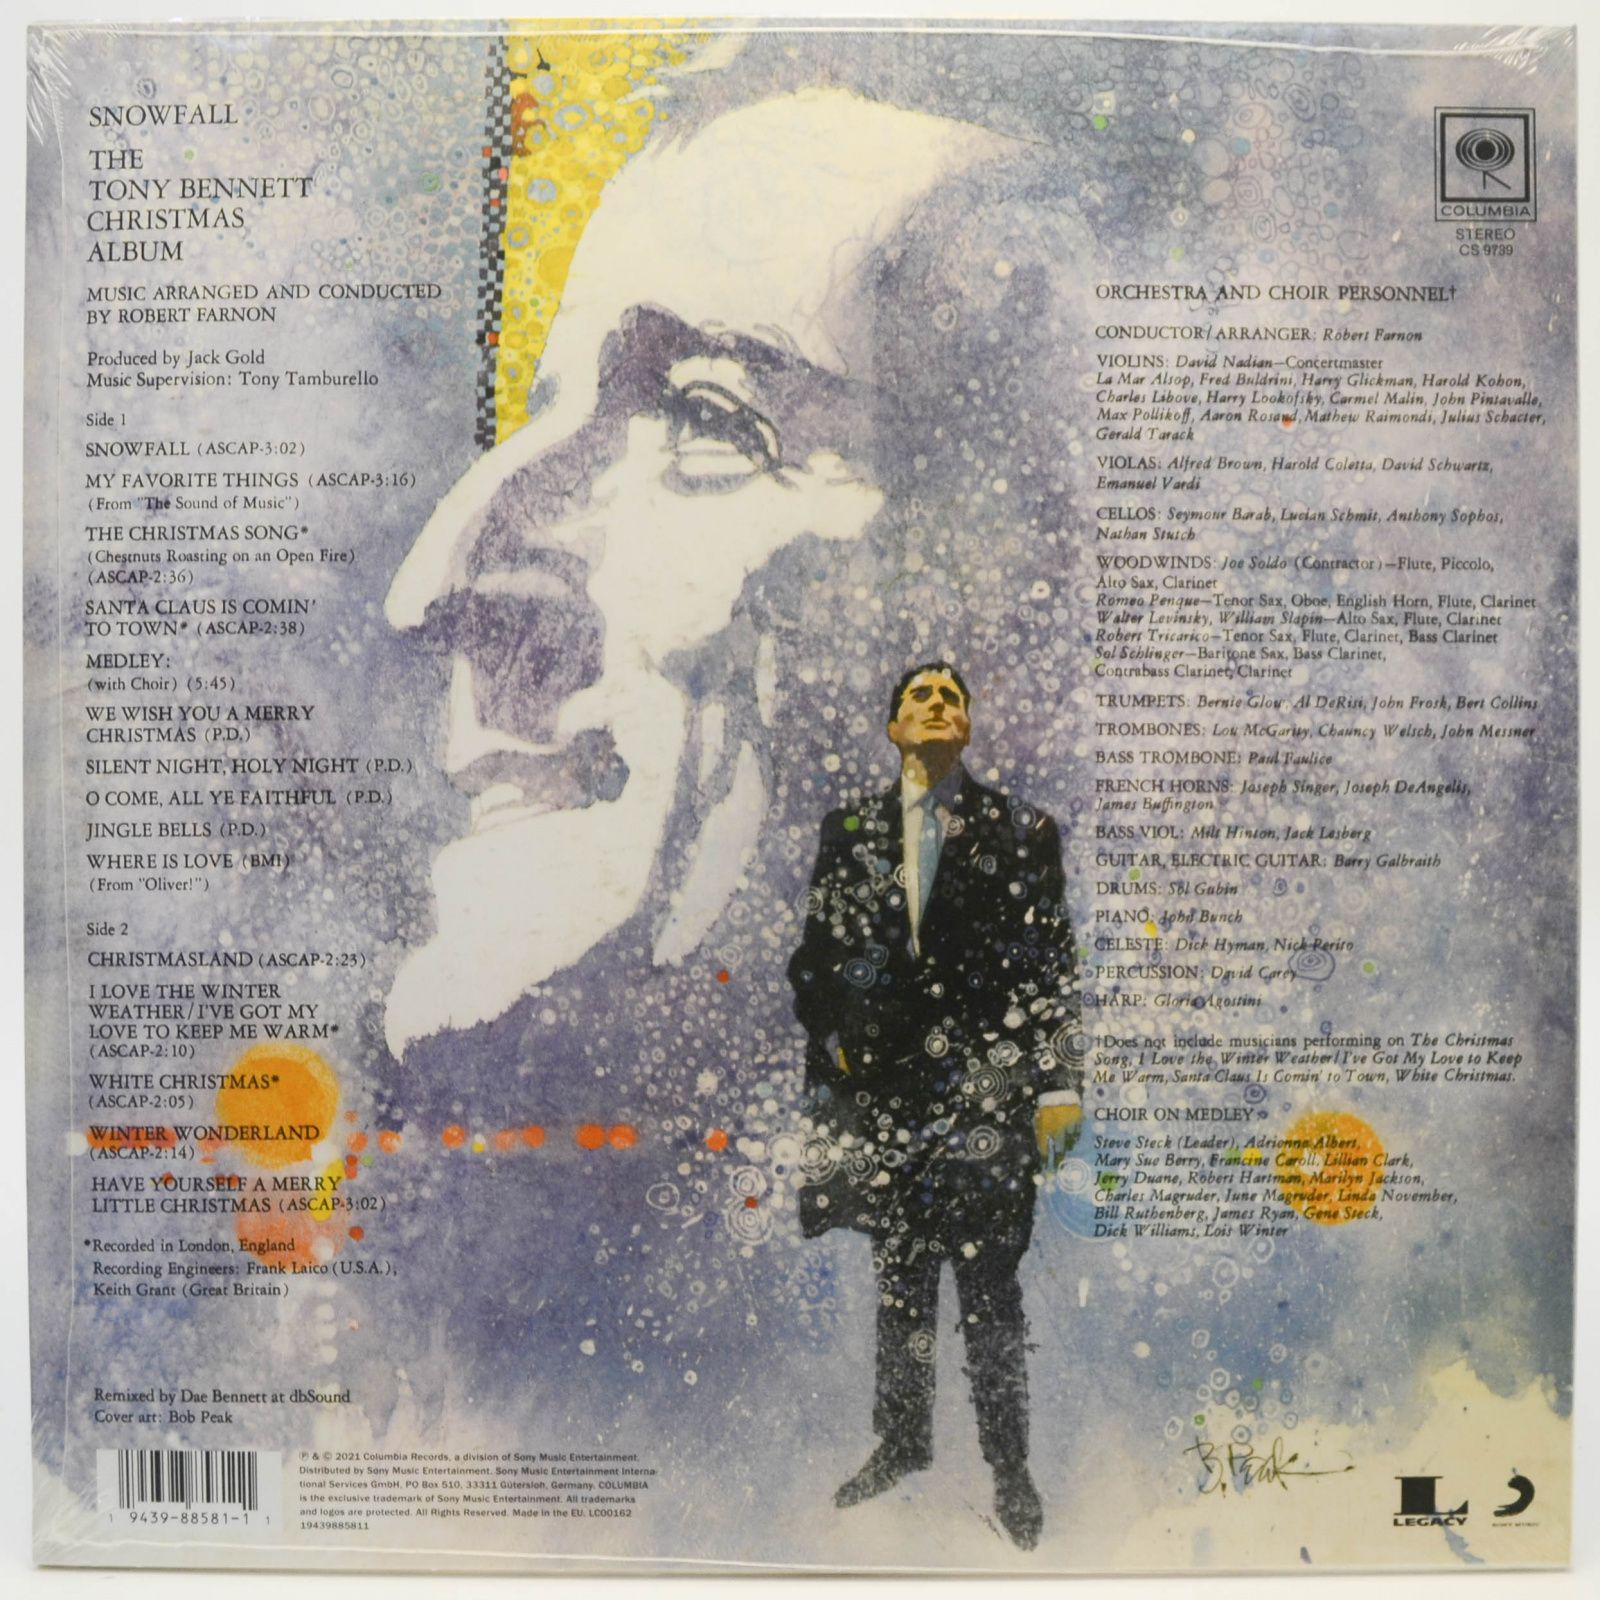 Tony Bennett — Snowfall (The Tony Bennett Christmas Album), 1968